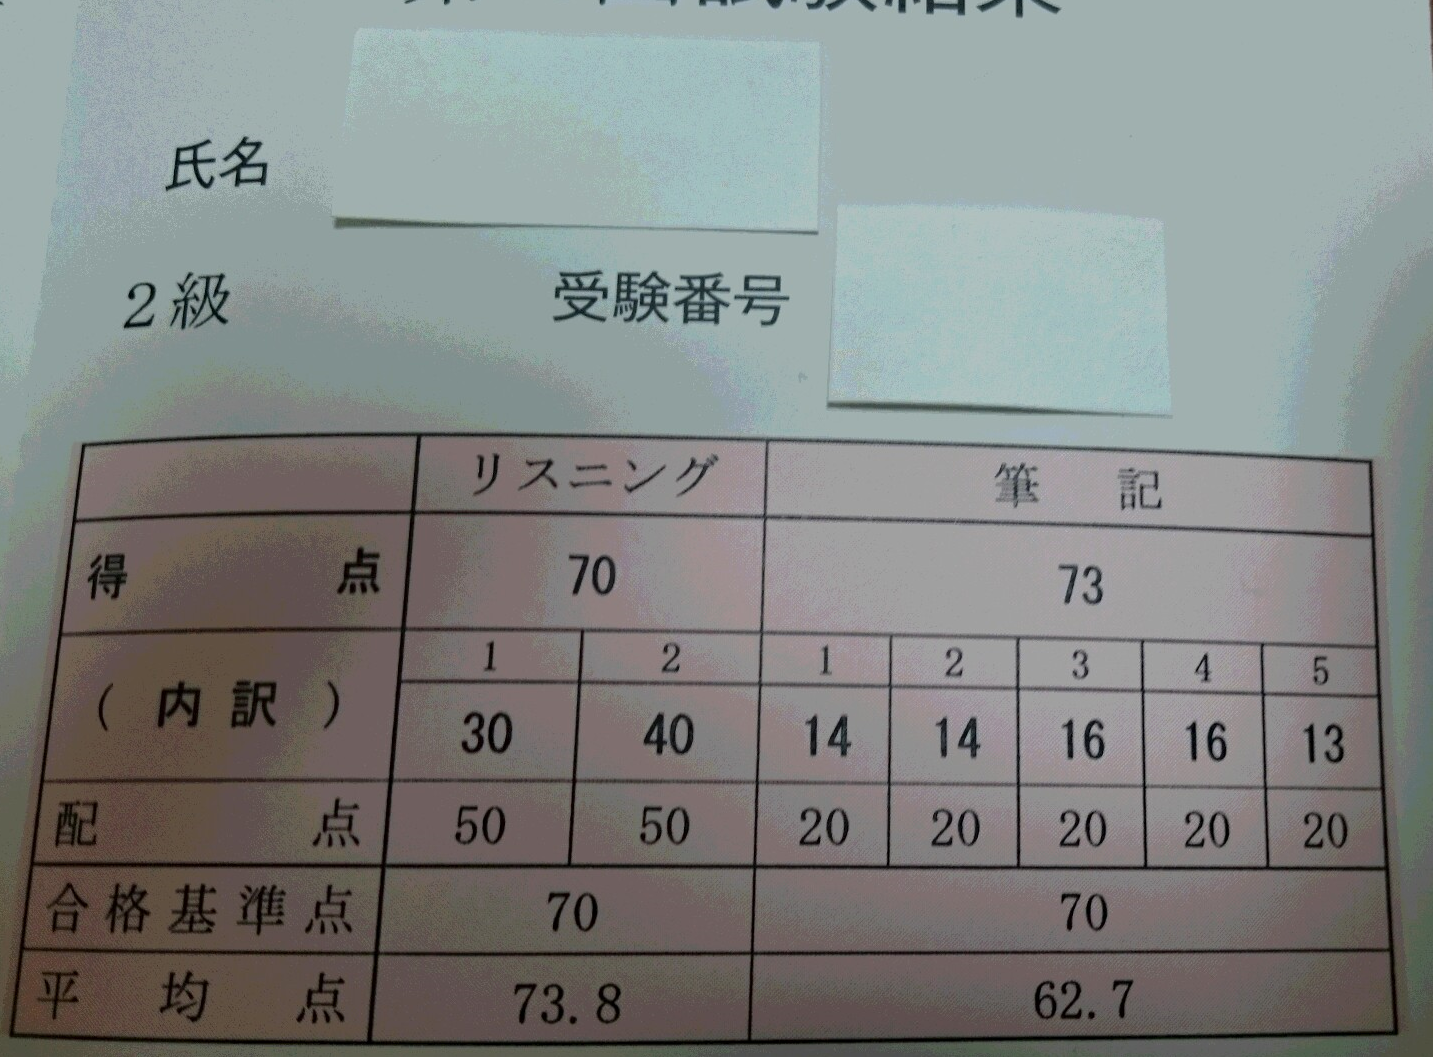 中国語検定二級合格 かかった時間と役立ったもの 中国語 中級の壁突破を目指して